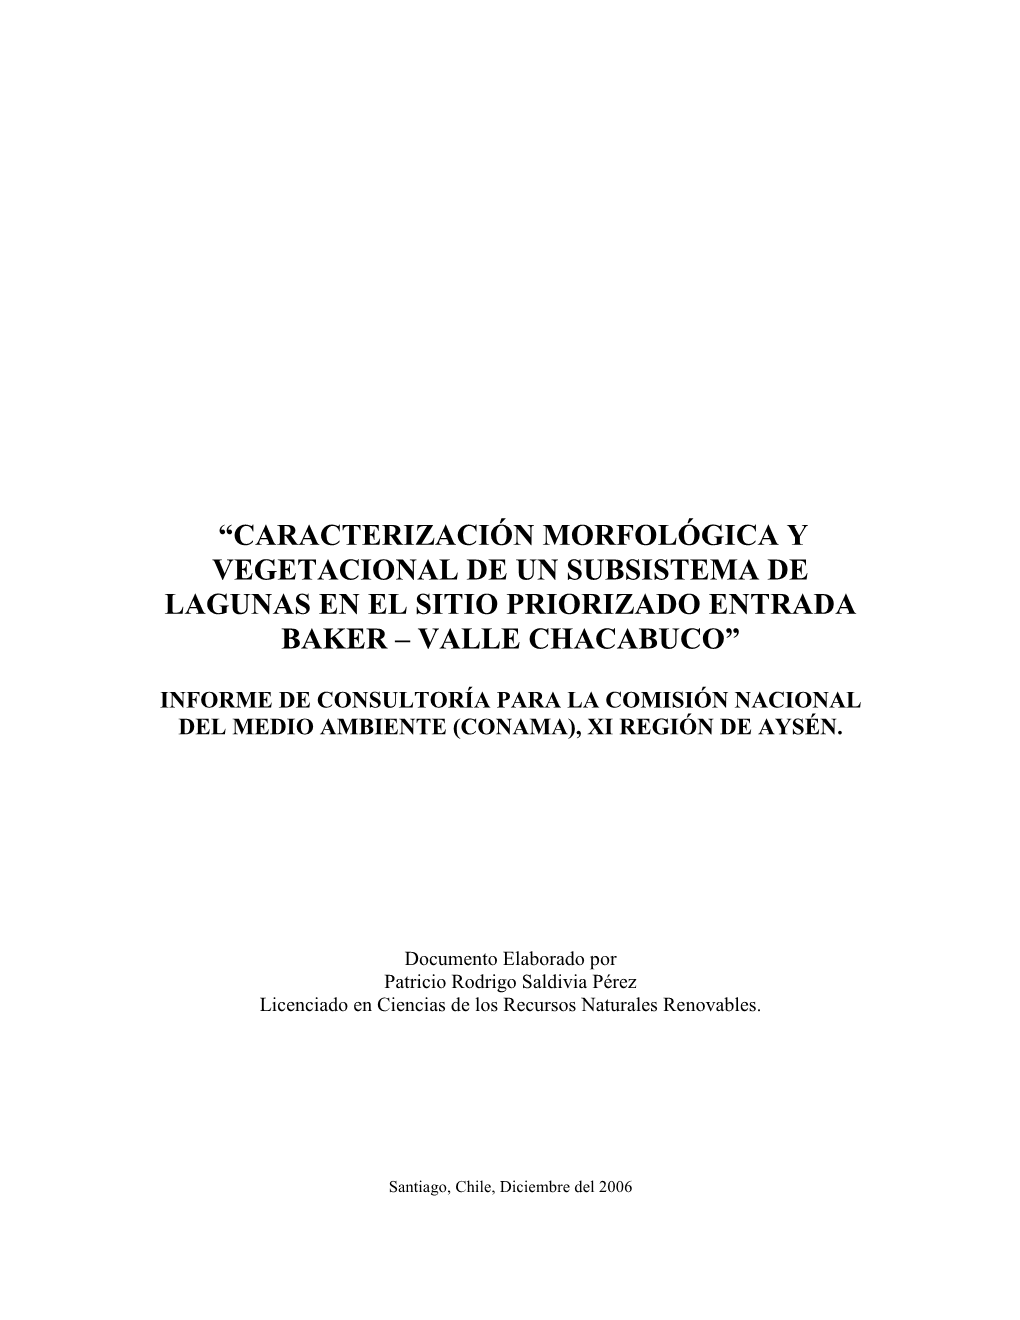 Caracterización Morfológica Y Vegetacional De Un Subsistema De Lagunas En El Sitio Priorizado Entrada Baker – Valle Chacabuco”